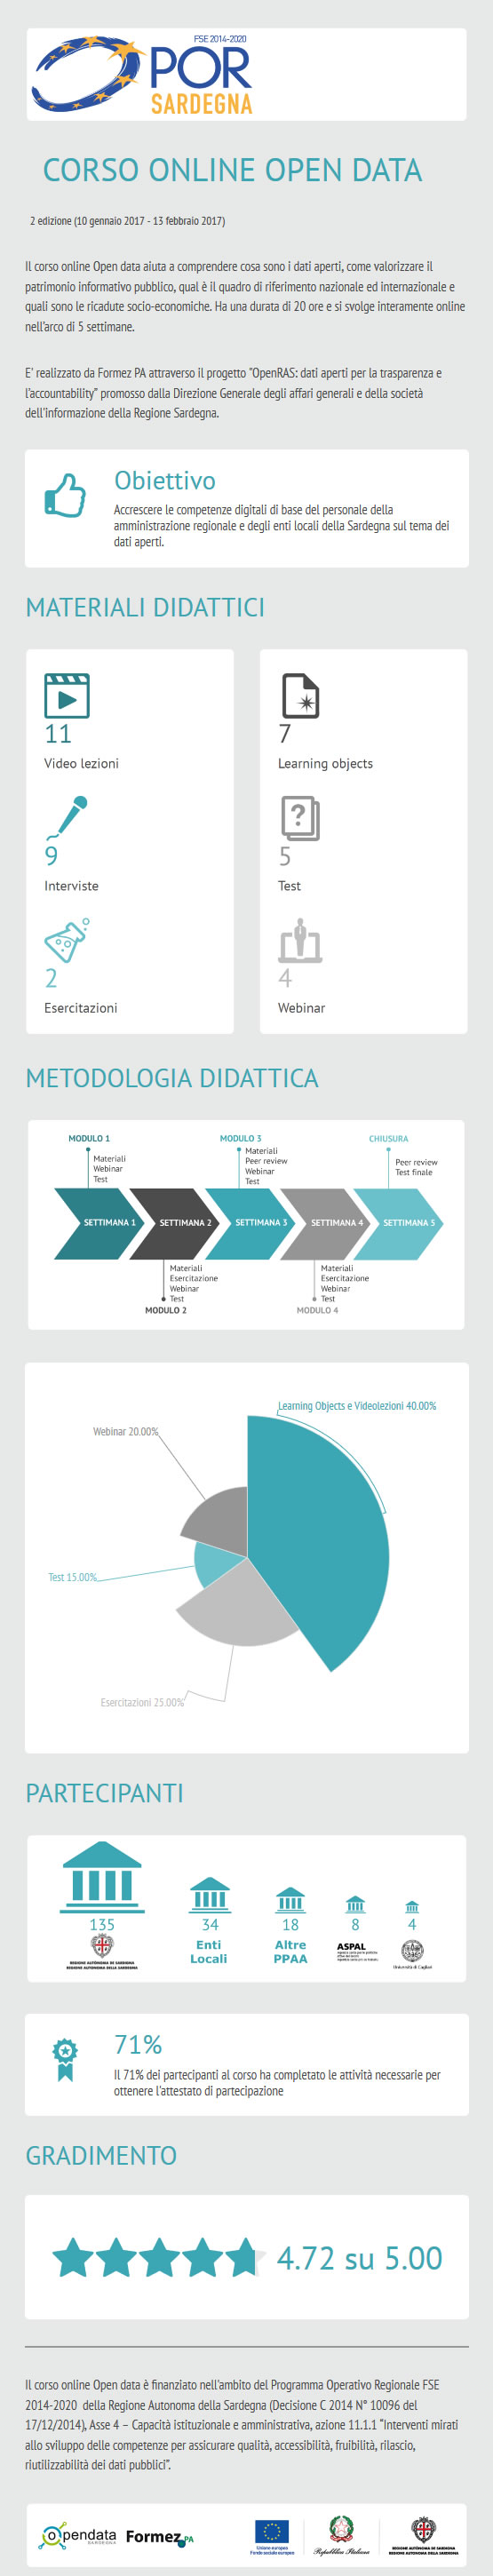 Infografica seconda edizione corso online opendata